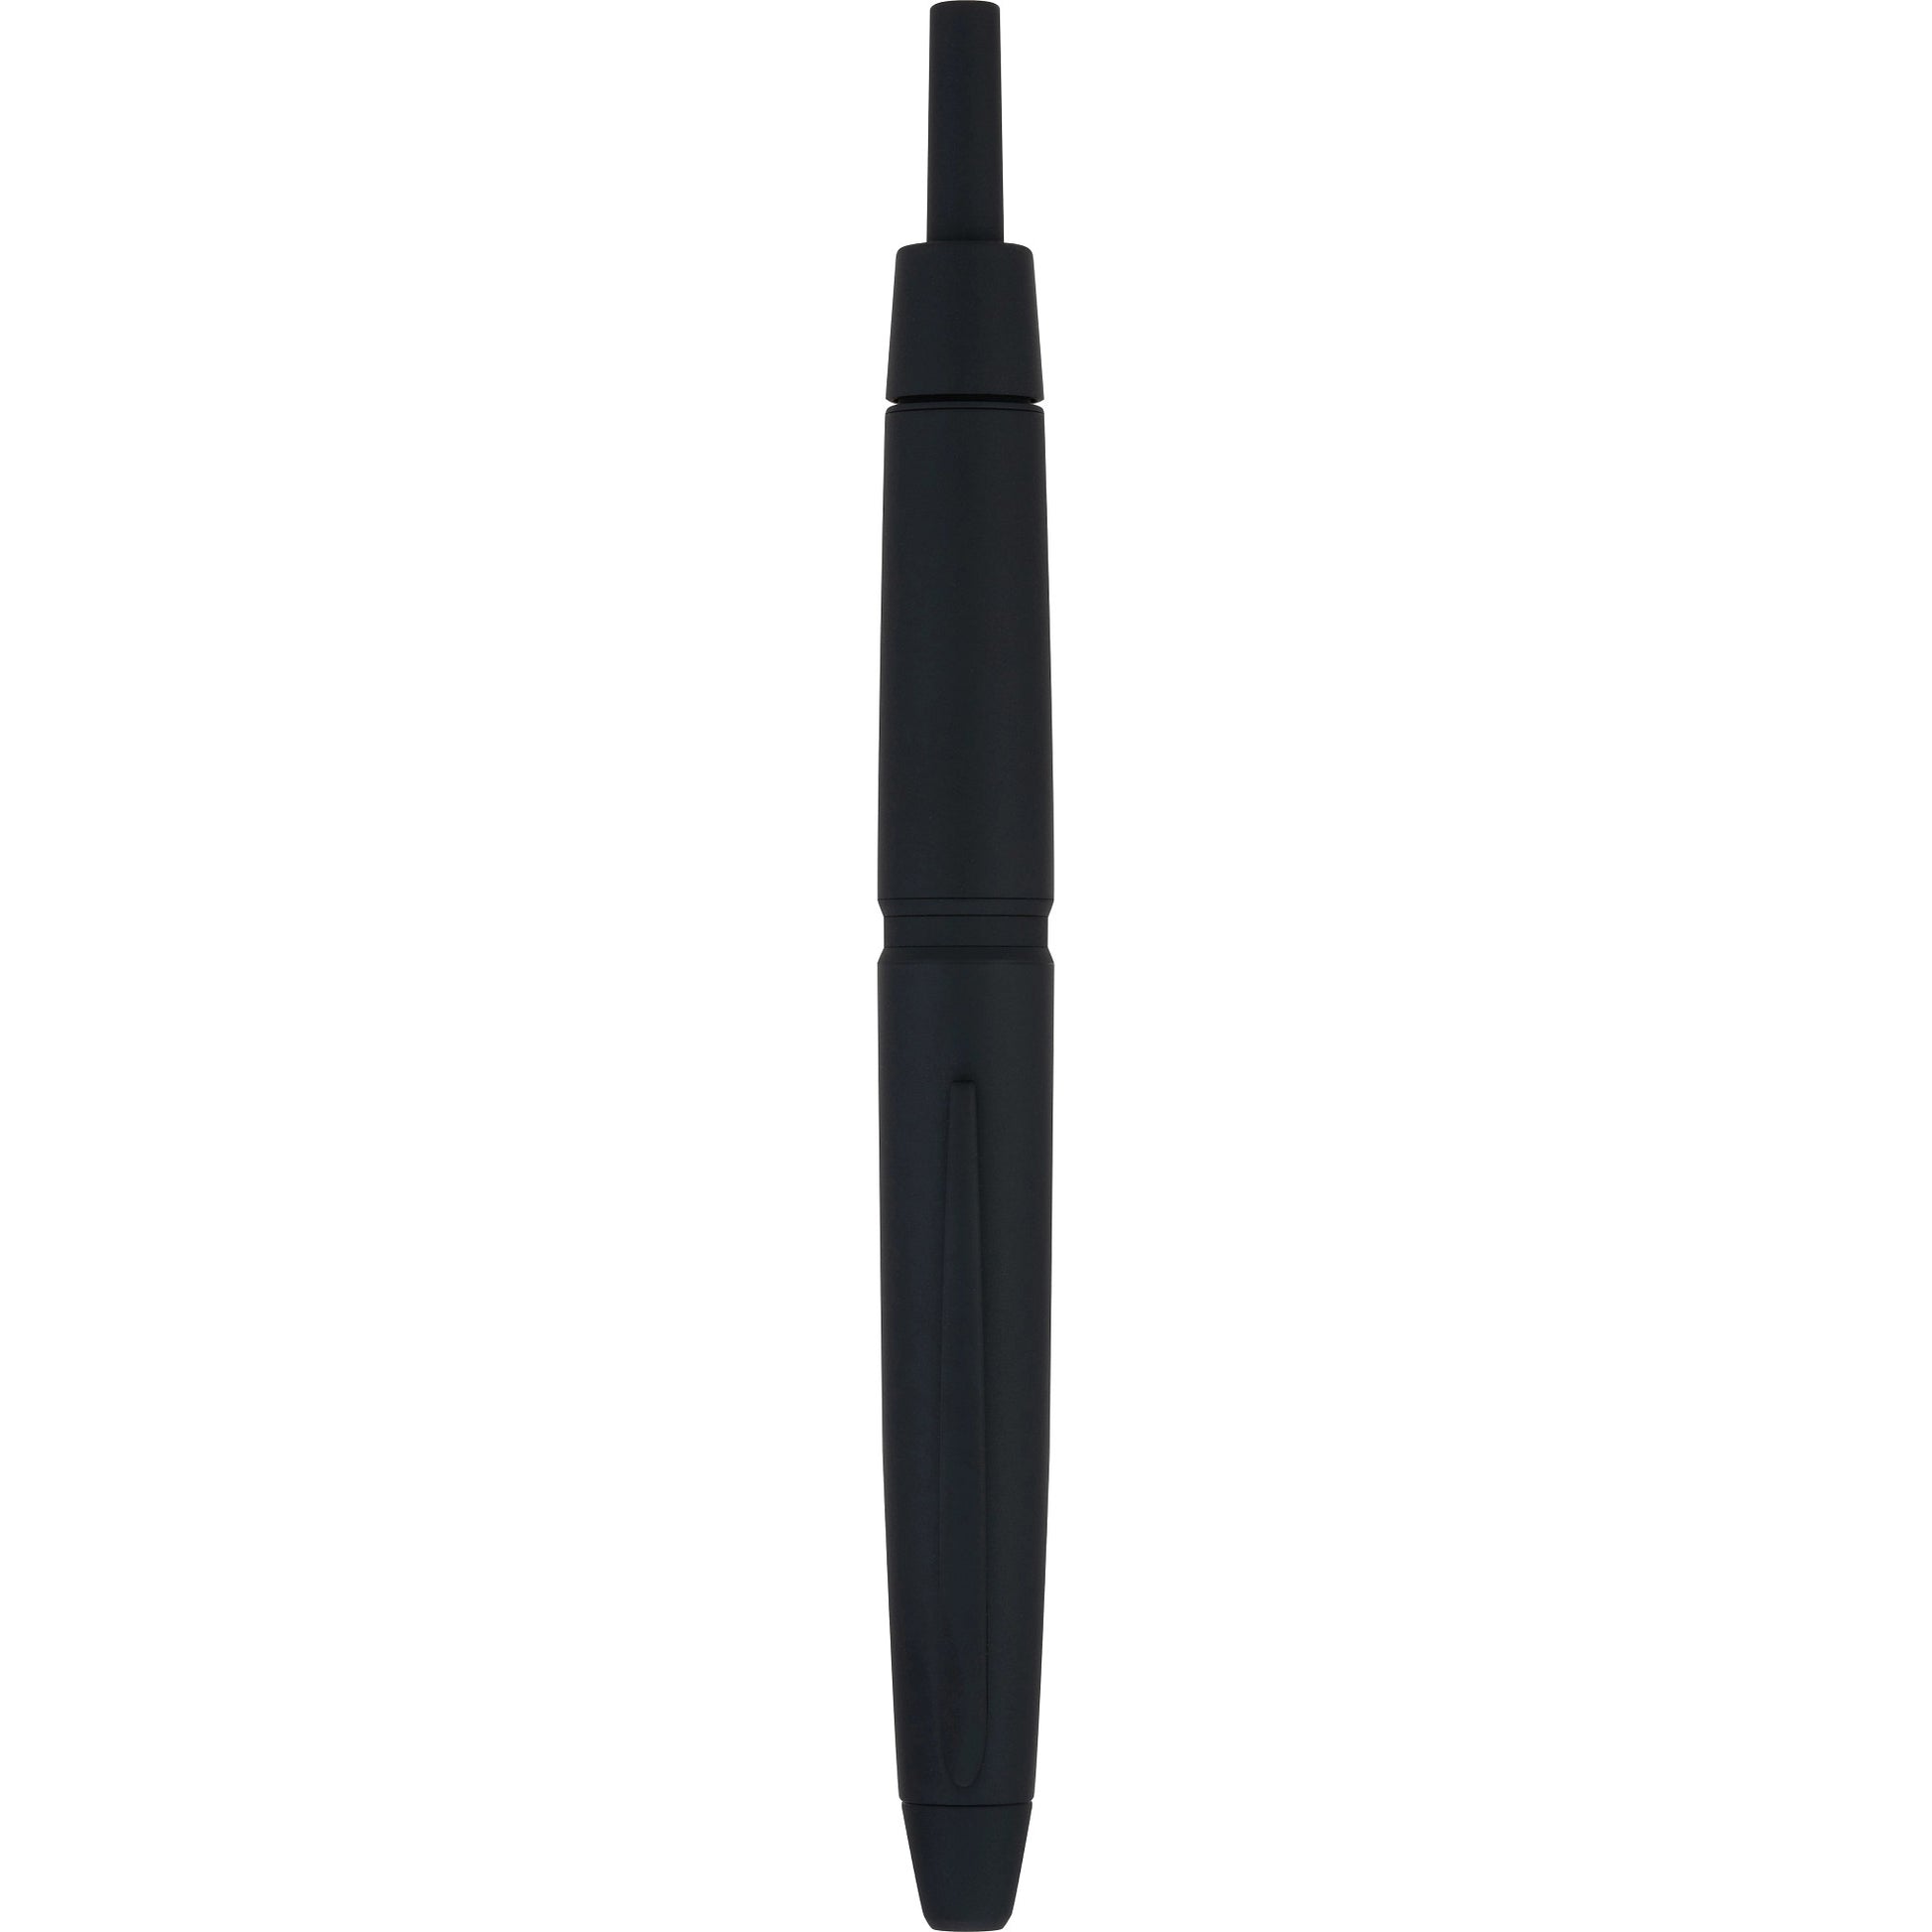 Pilot Vanishing Point LS Fountain Pen capless Black Matte - TY Lee Pen Shop  - TY Lee Pen Shop